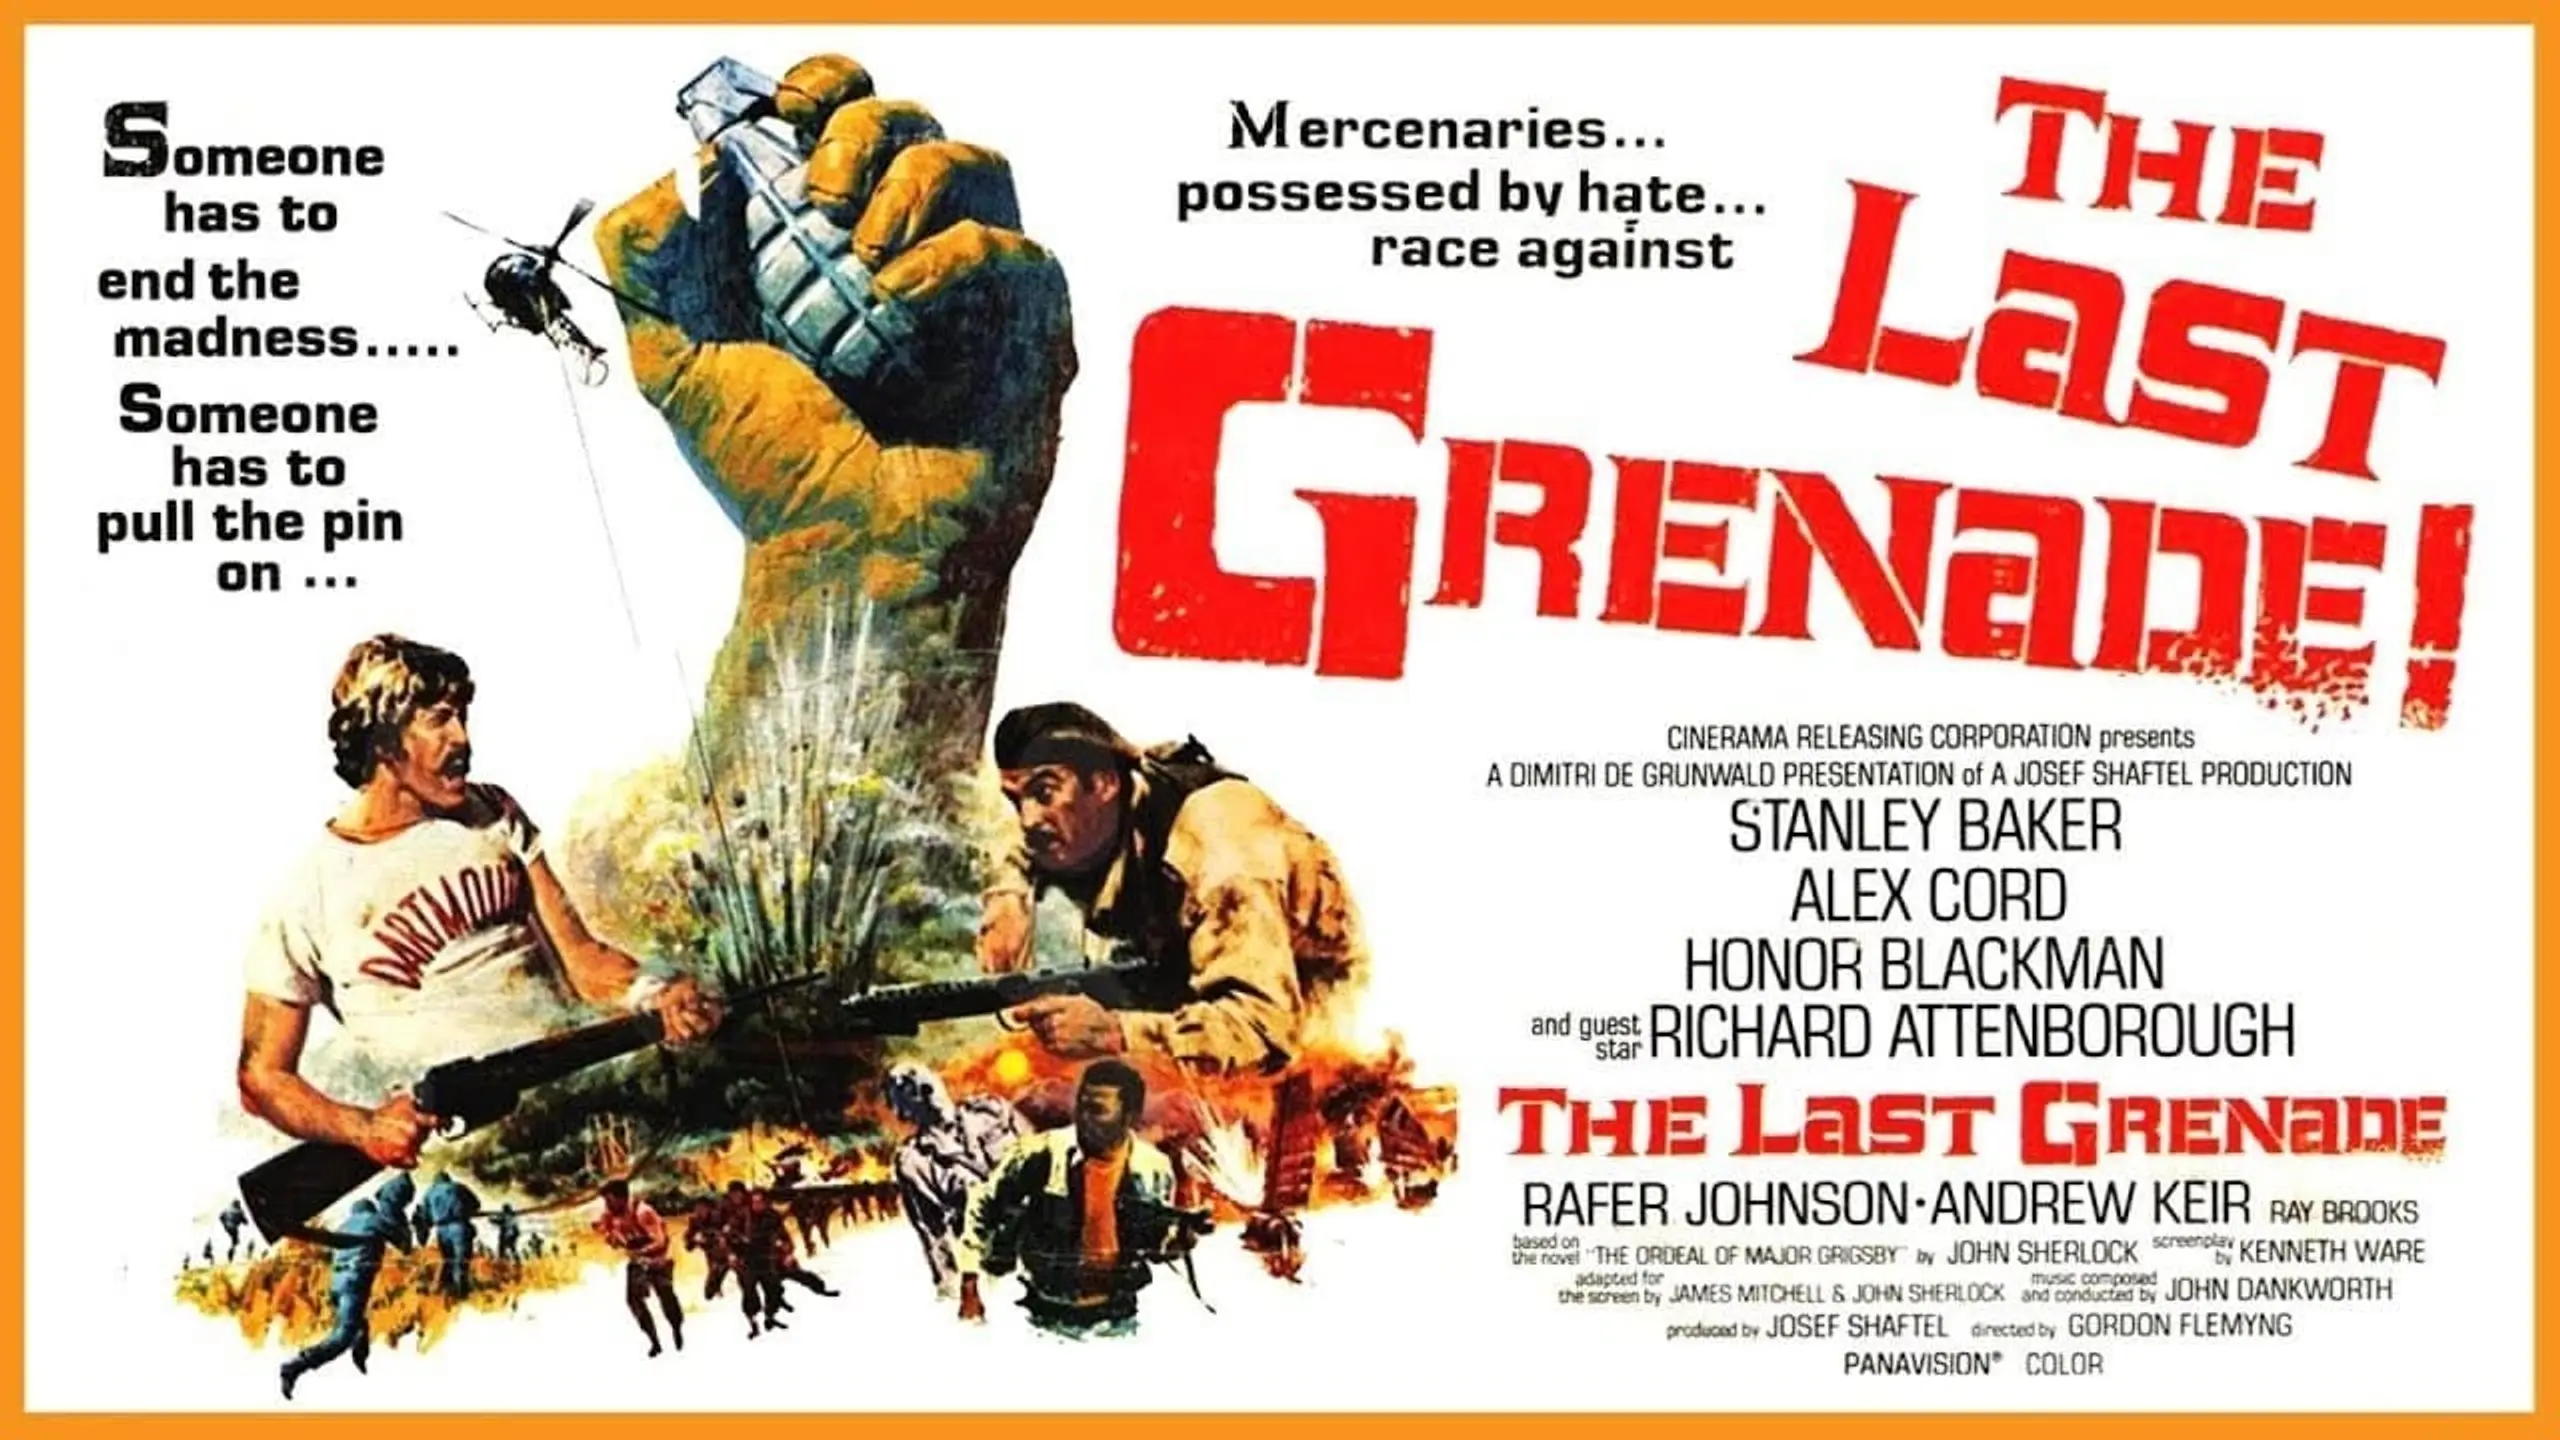 The Last Grenade